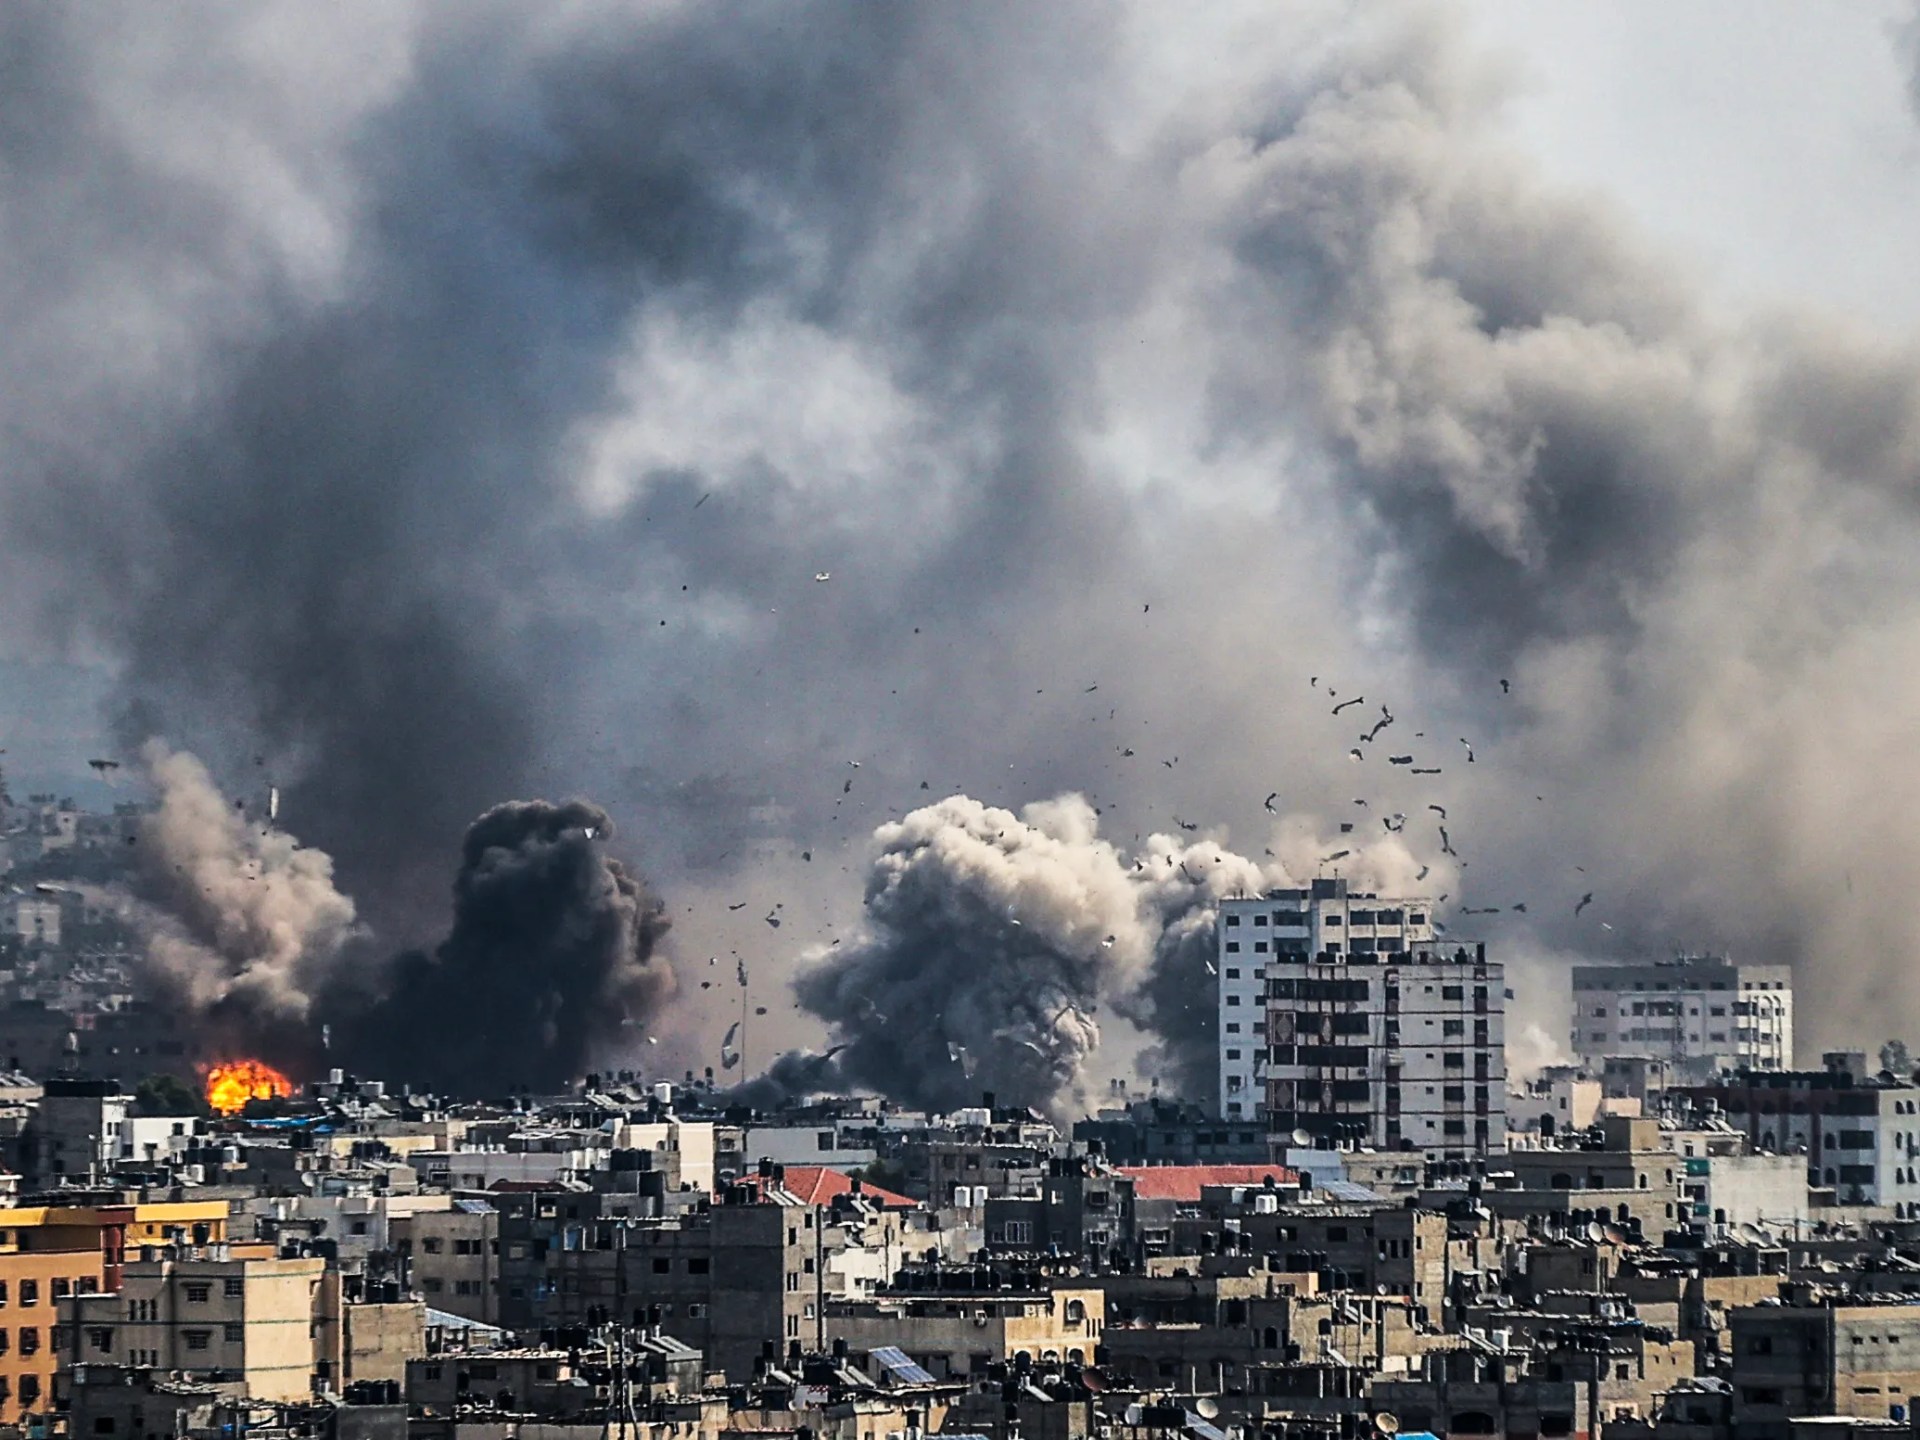 رويترز: مسيرات أميركية تحلق فوق غزة بحثا عن الأسرى | أخبار – البوكس نيوز